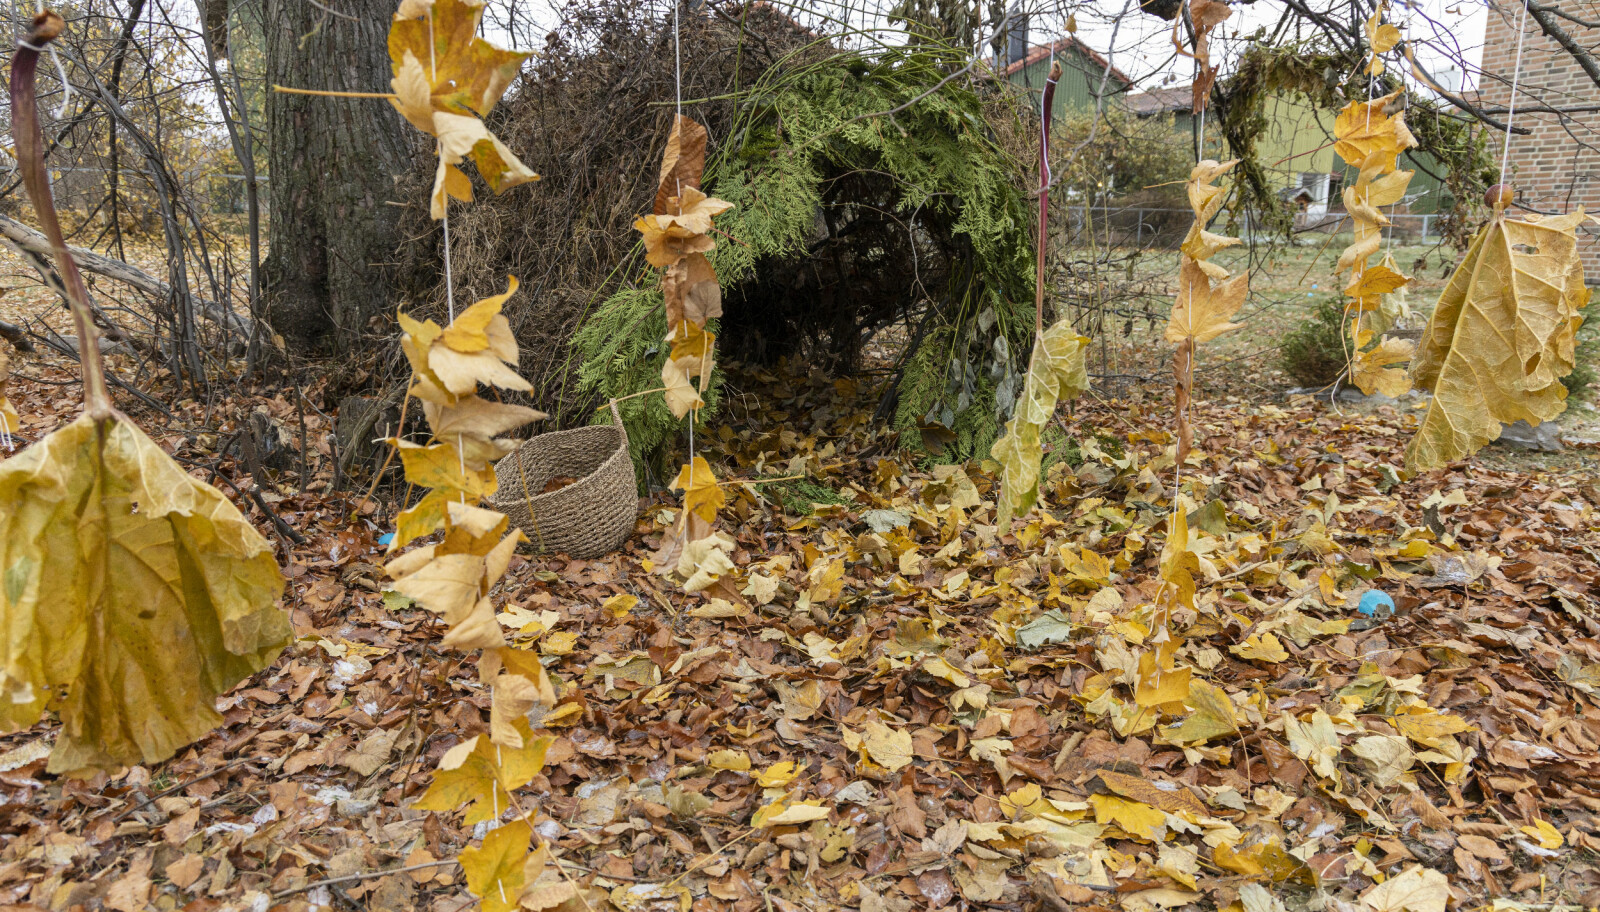 Studentene ønsket å ramme inn en lun hule med en vegg av blader foran.